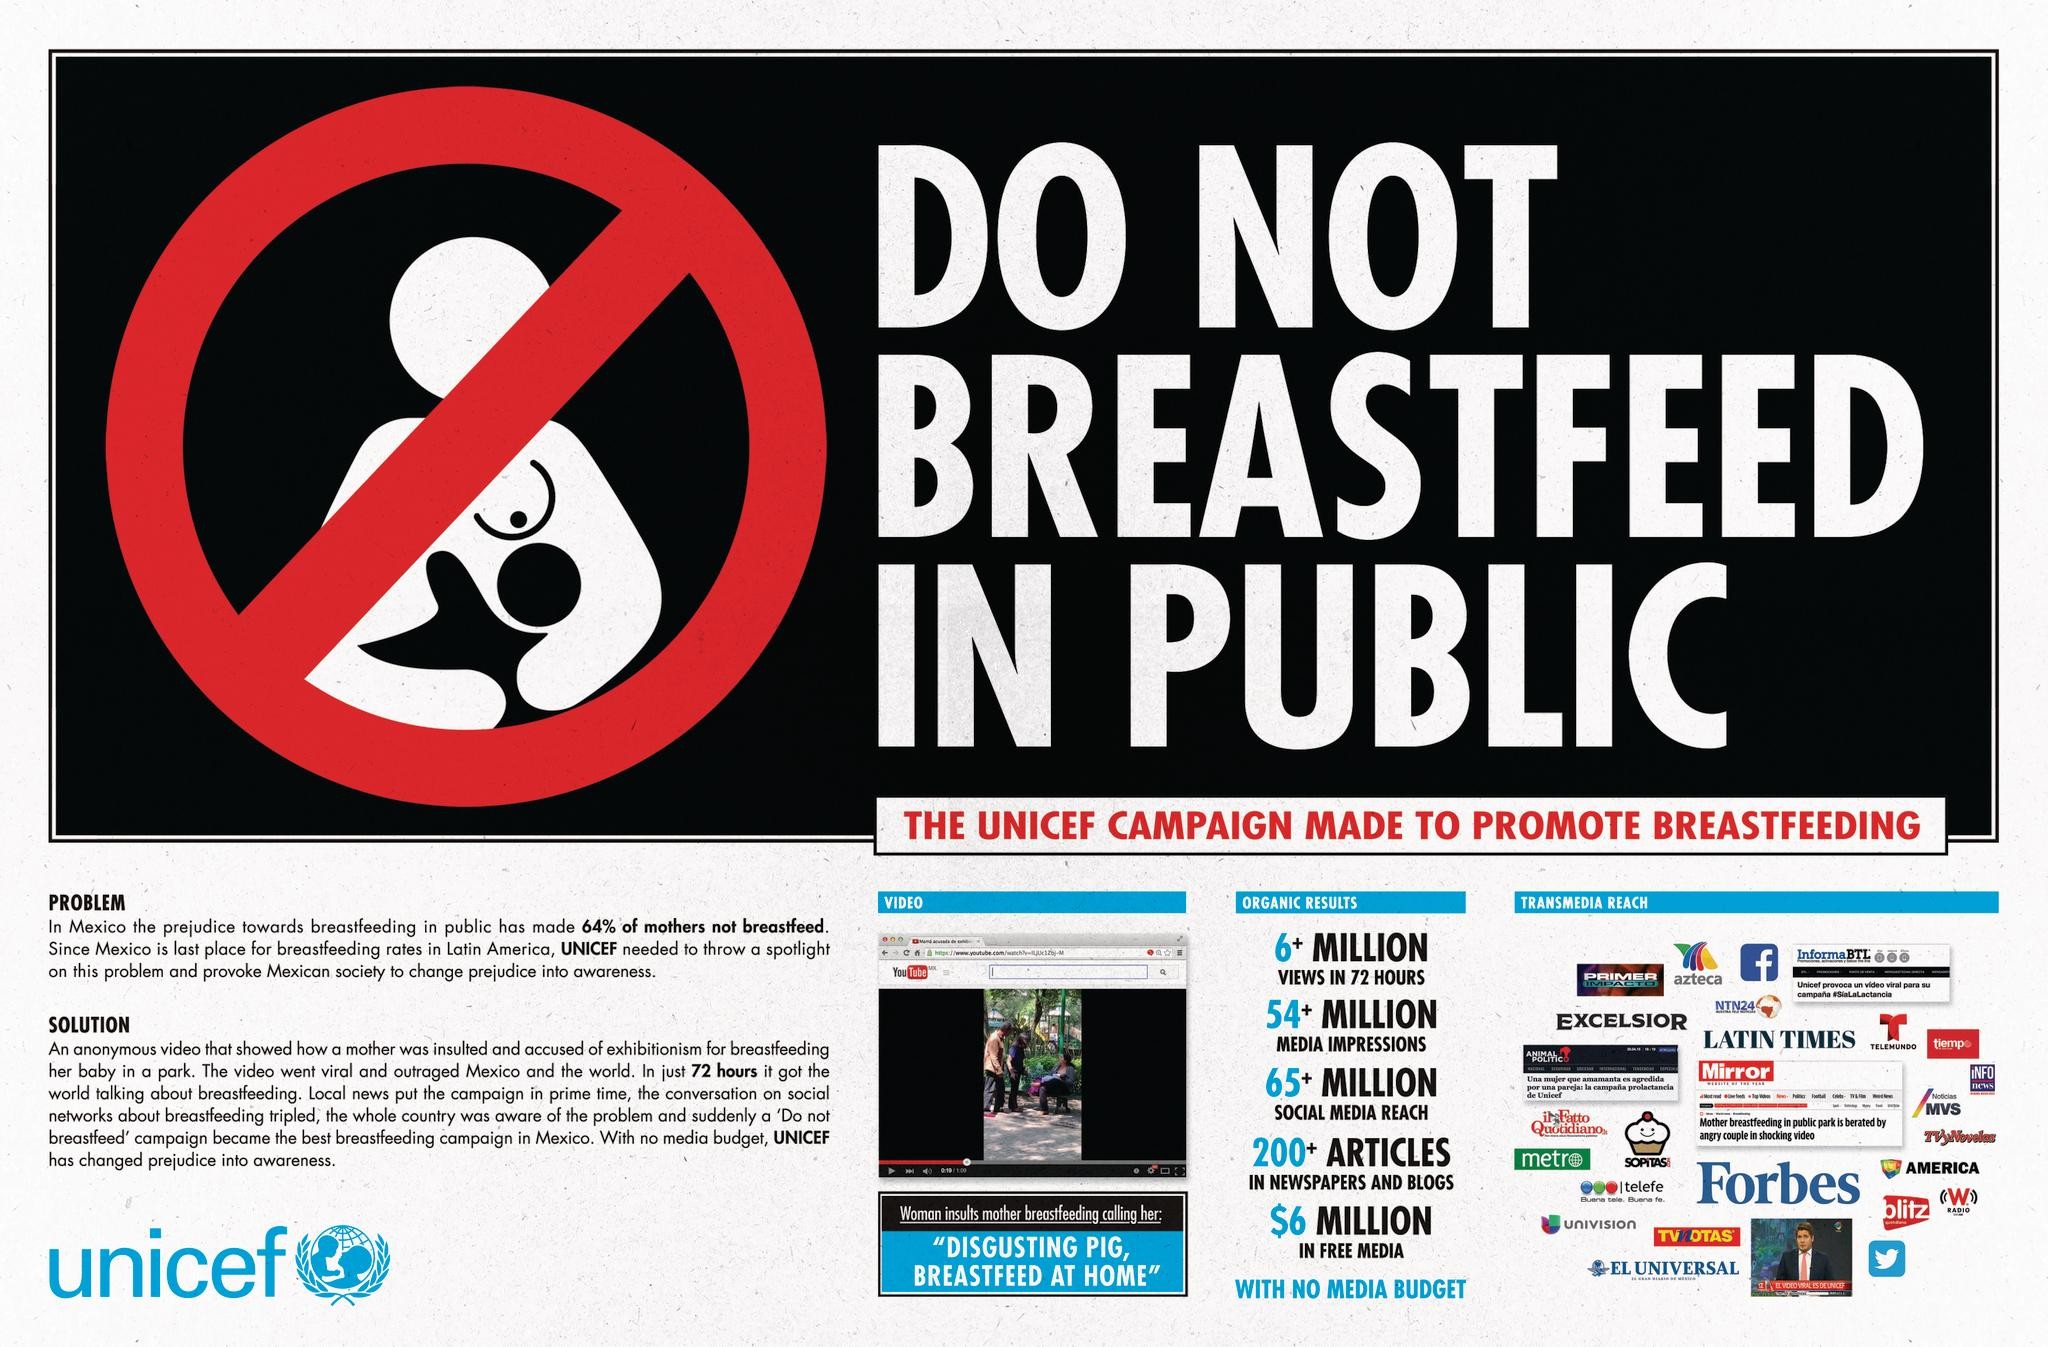 DO NOT BREASTFEED IN PUBLIC